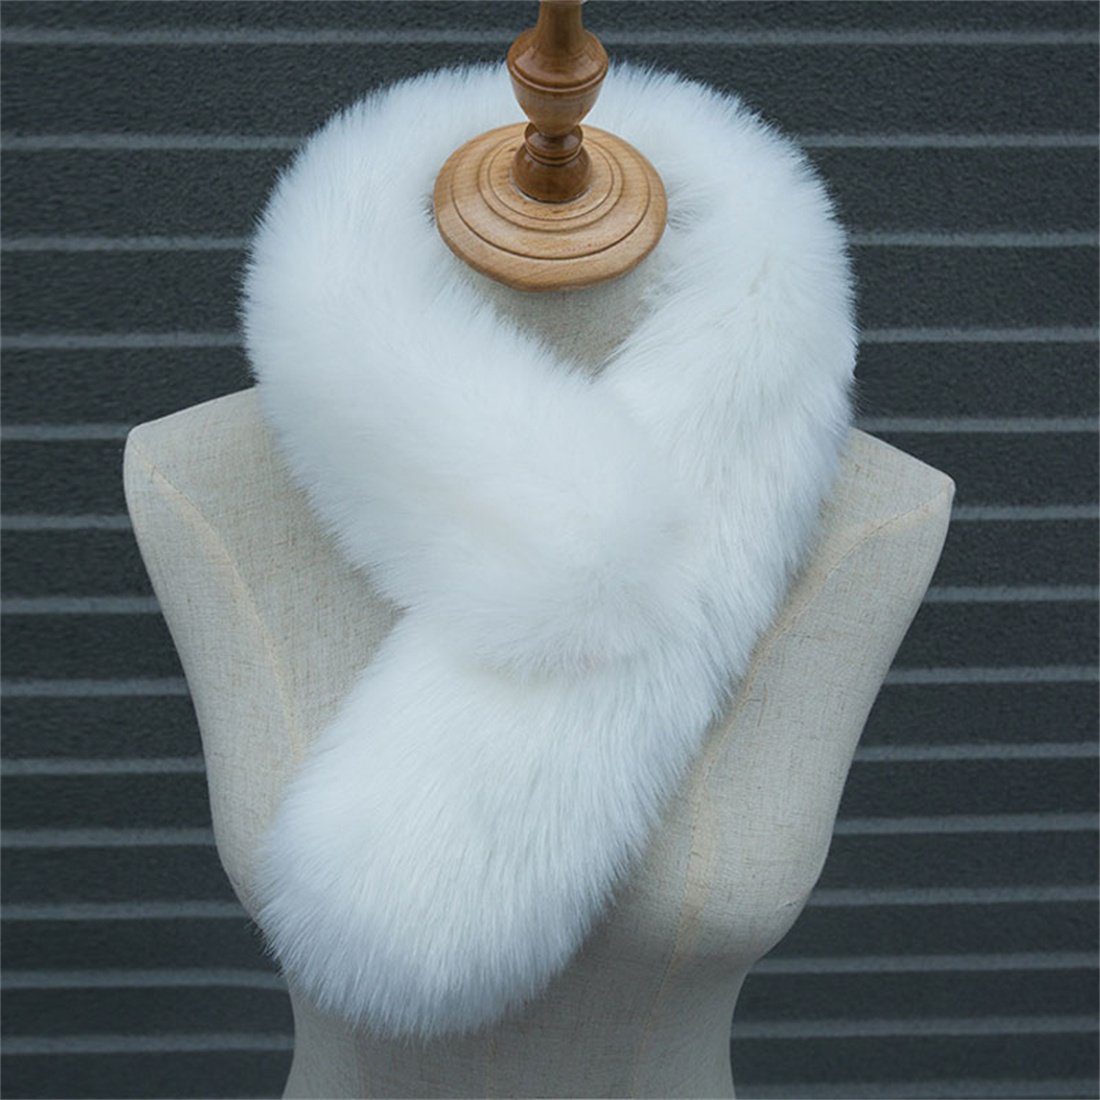 warm verdickt Damen Winter DÖRÖY Schal,Nachahmung einfarbigSchal Plüsch Modeschal Pelz Lila